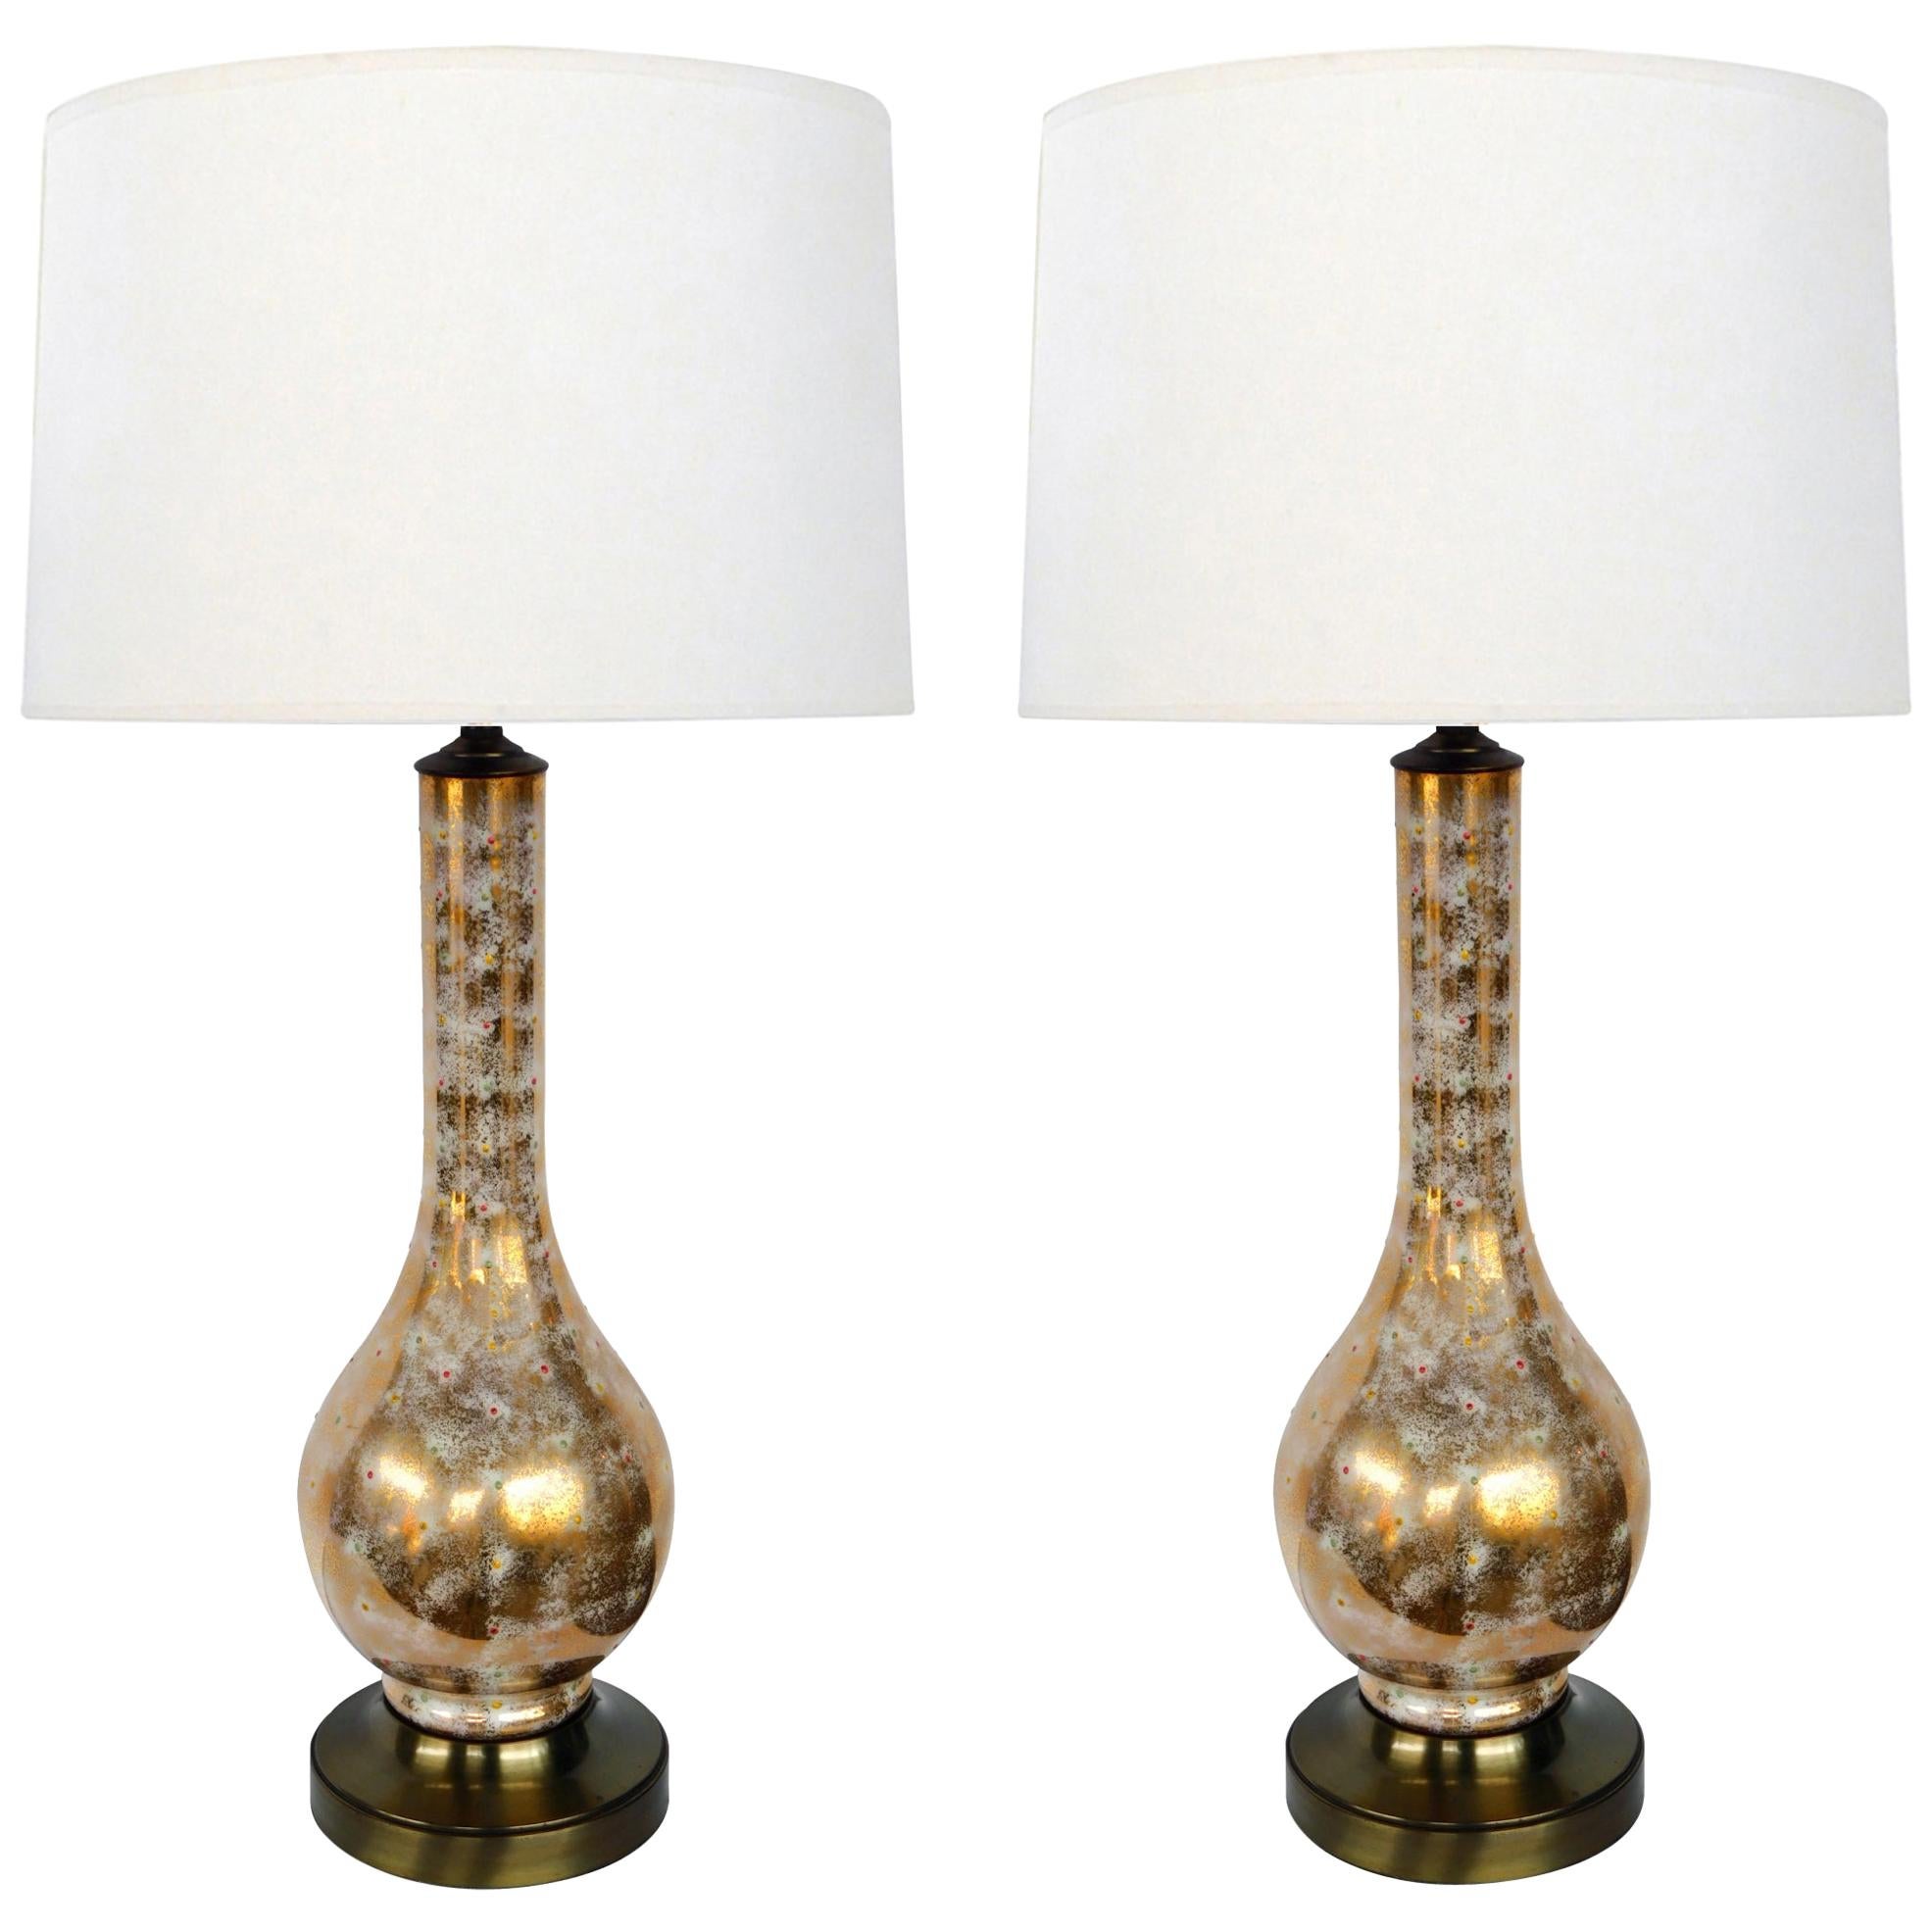 Paar gold-weiß glasierte Murano-Lampen in Flaschenform aus den 1960er Jahren mit farbigem Fleck